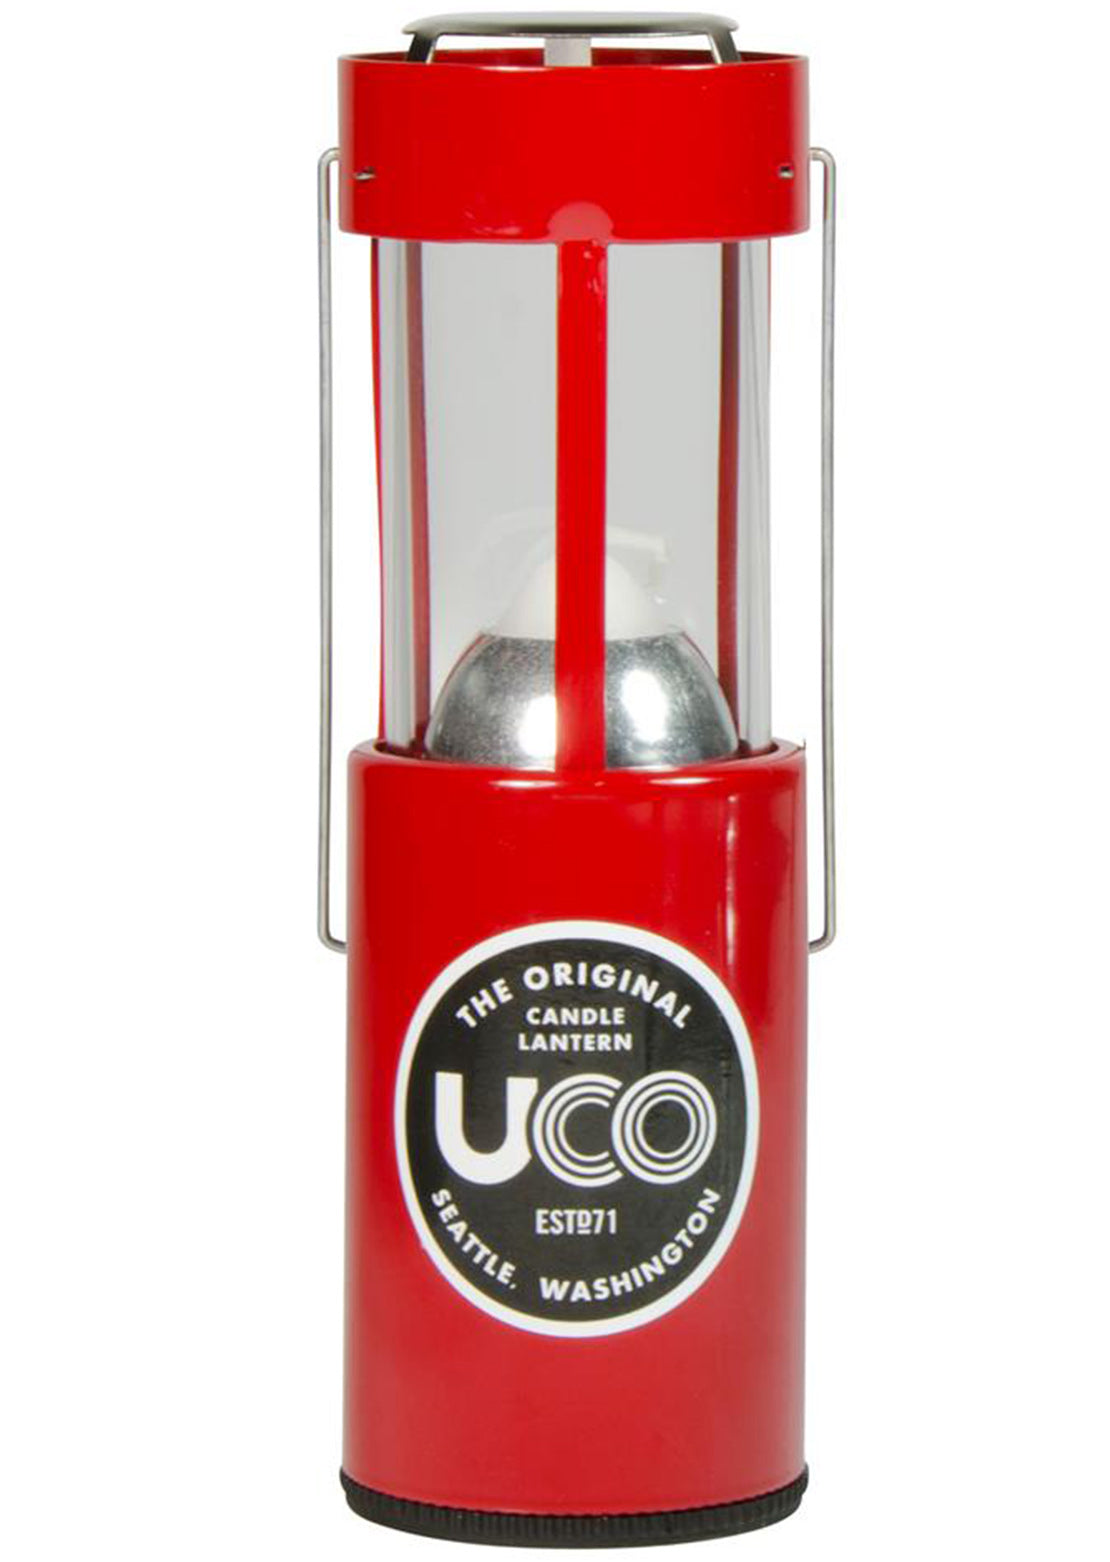 Uco Original Candle Lantern Red